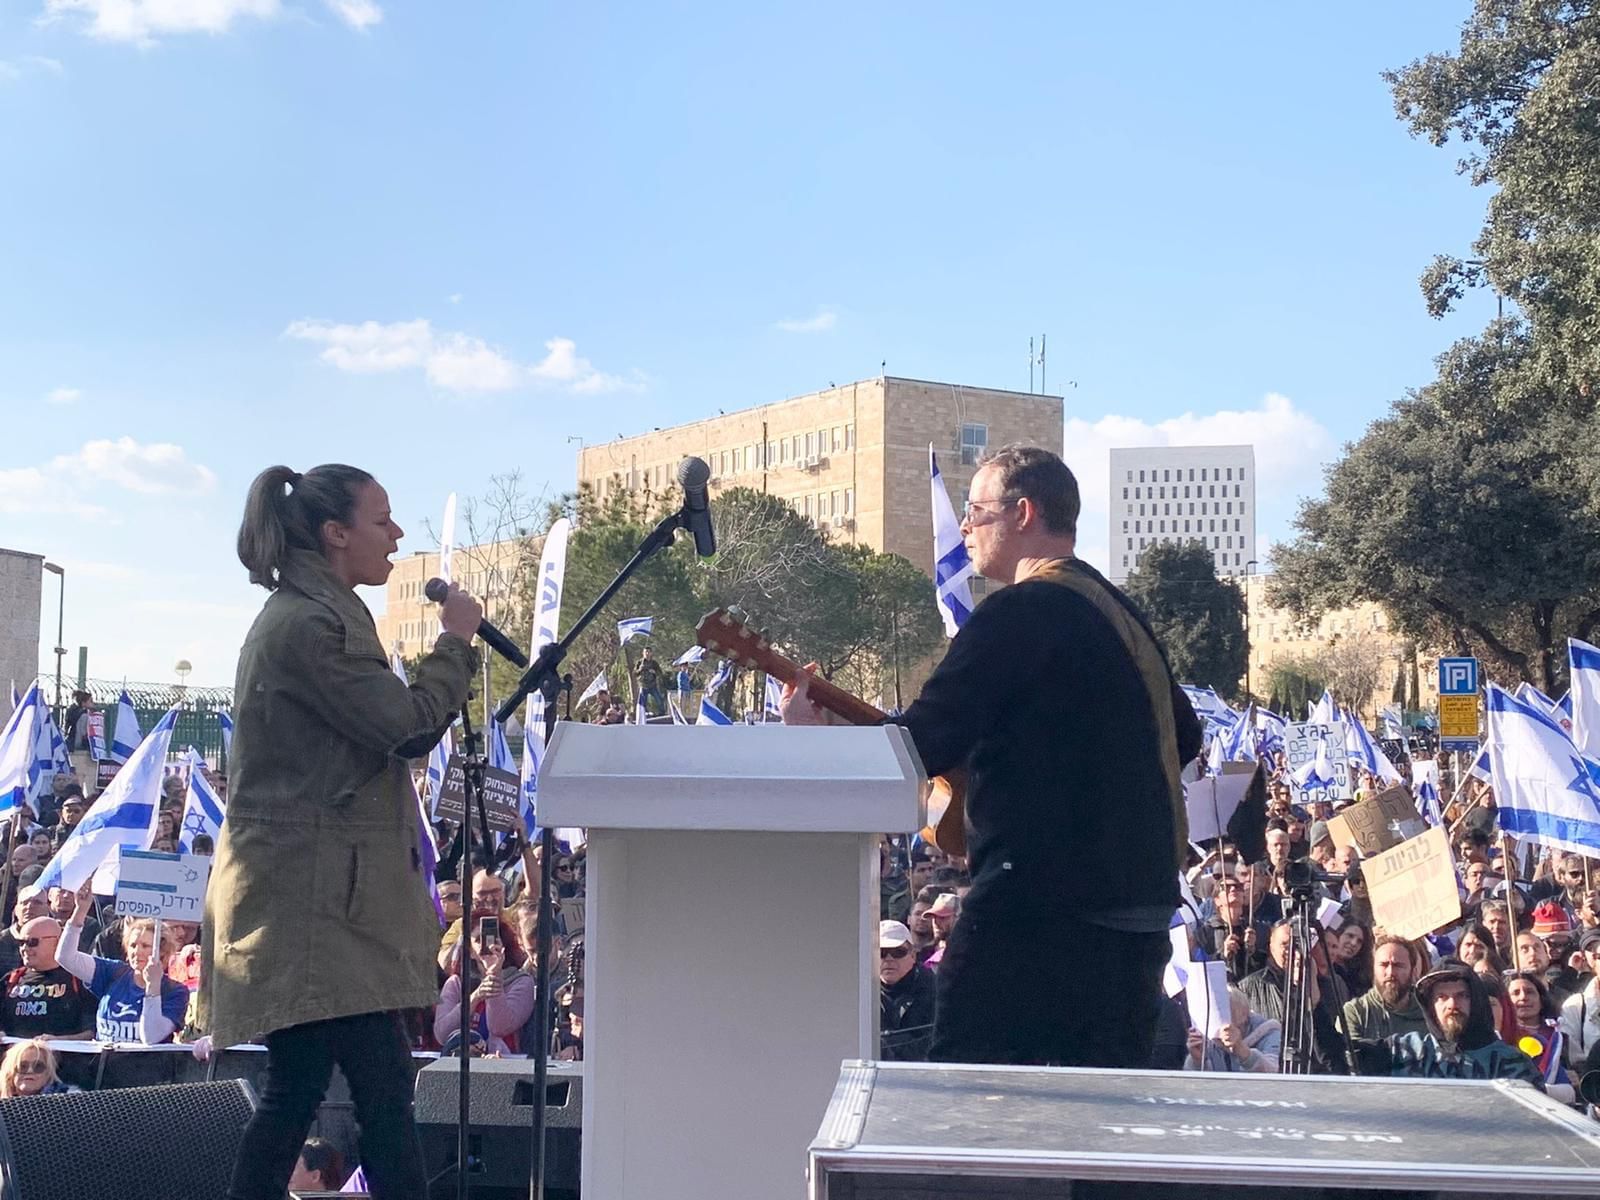 רונה קינן וערן וייץ מופיעים בהפגנה נגד הרפורמה במערכת המשפט בירושלים (צילום: ספי אפרתי, מתוך הרשת החברתית)